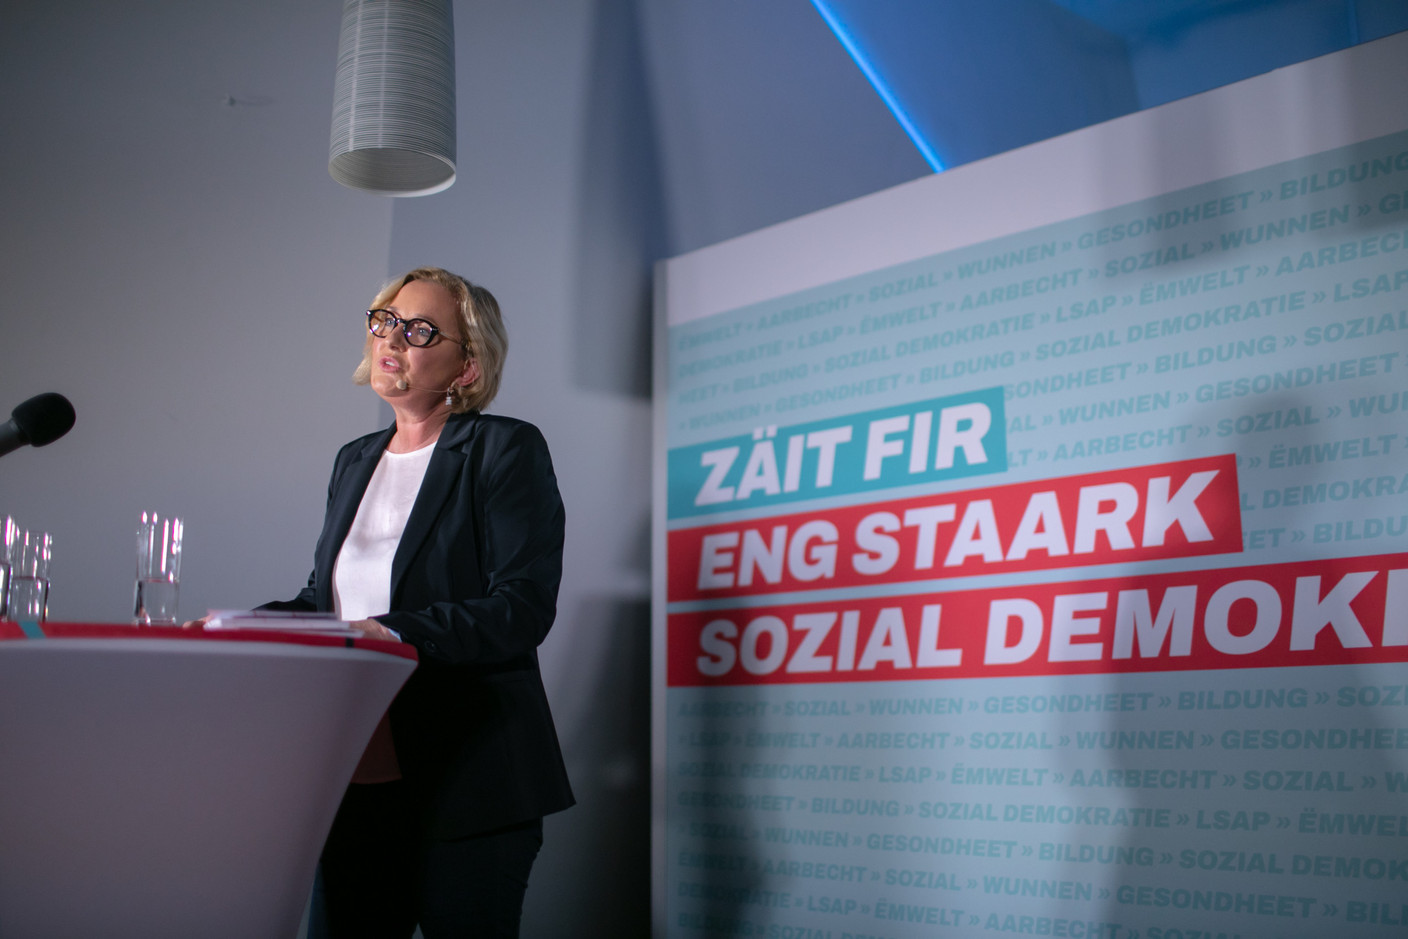 La vice-Première ministre devant un panneau au slogan évocateur: «Zäit fir eng staark sozial Demokratie», ou «Le temps est venu pour une sociale-démocratie forte».  (Photo: Matic Zorman/Maison Moderne)